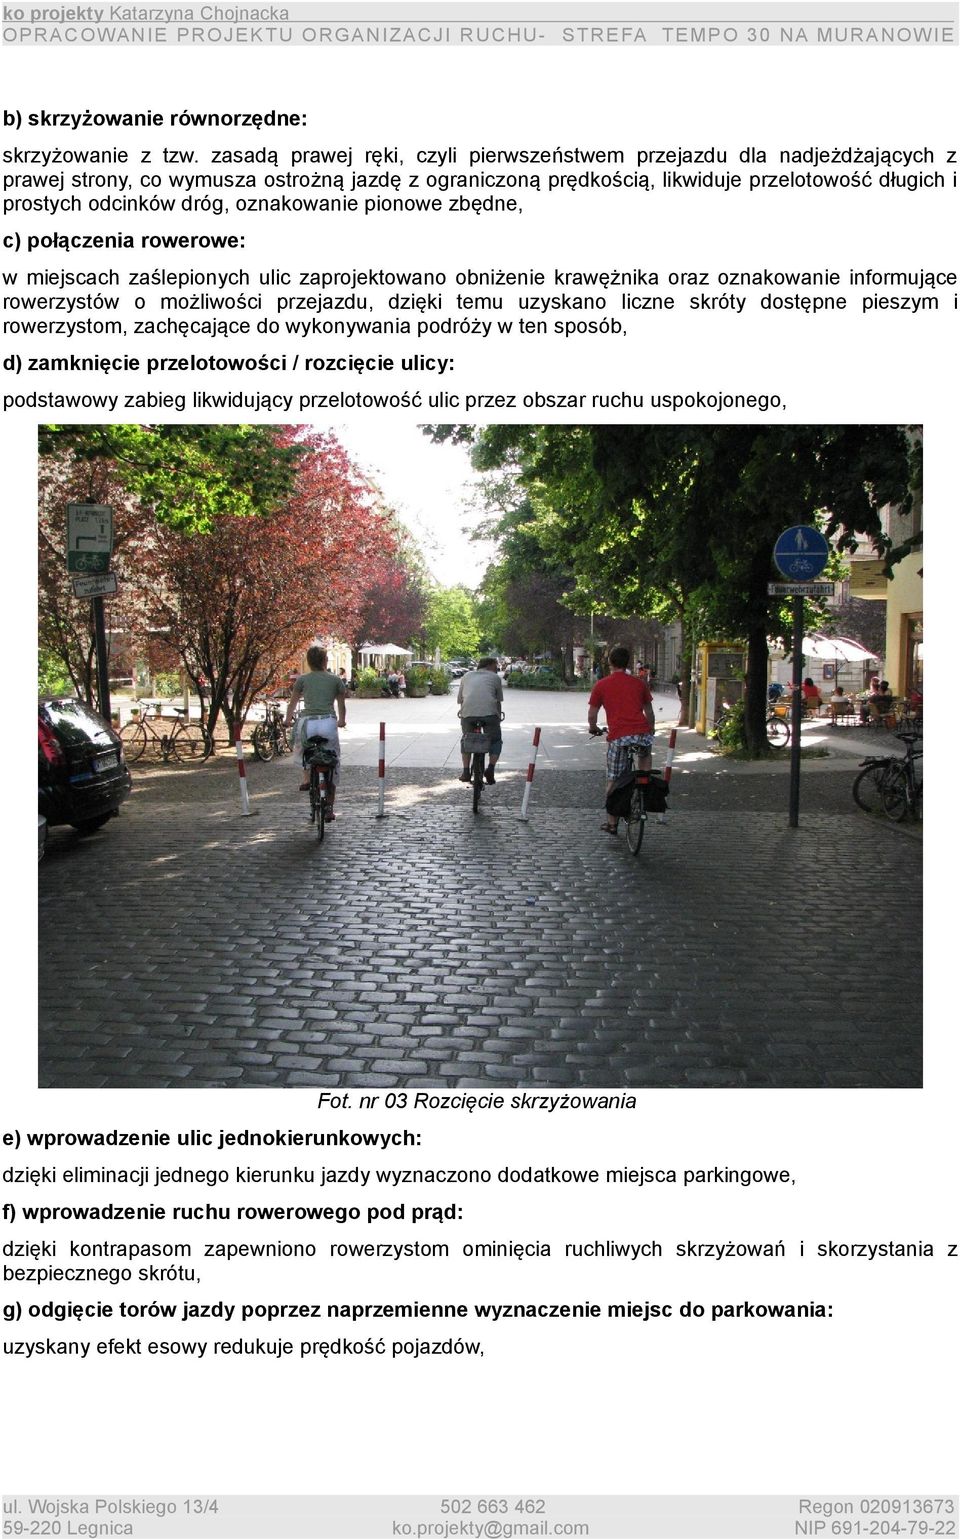 oznakowanie pionowe zbędne, c) połączenia rowerowe: w miejscach zaślepionych ulic zaprojektowano obniżenie krawężnika oraz oznakowanie informujące rowerzystów o możliwości przejazdu, dzięki temu